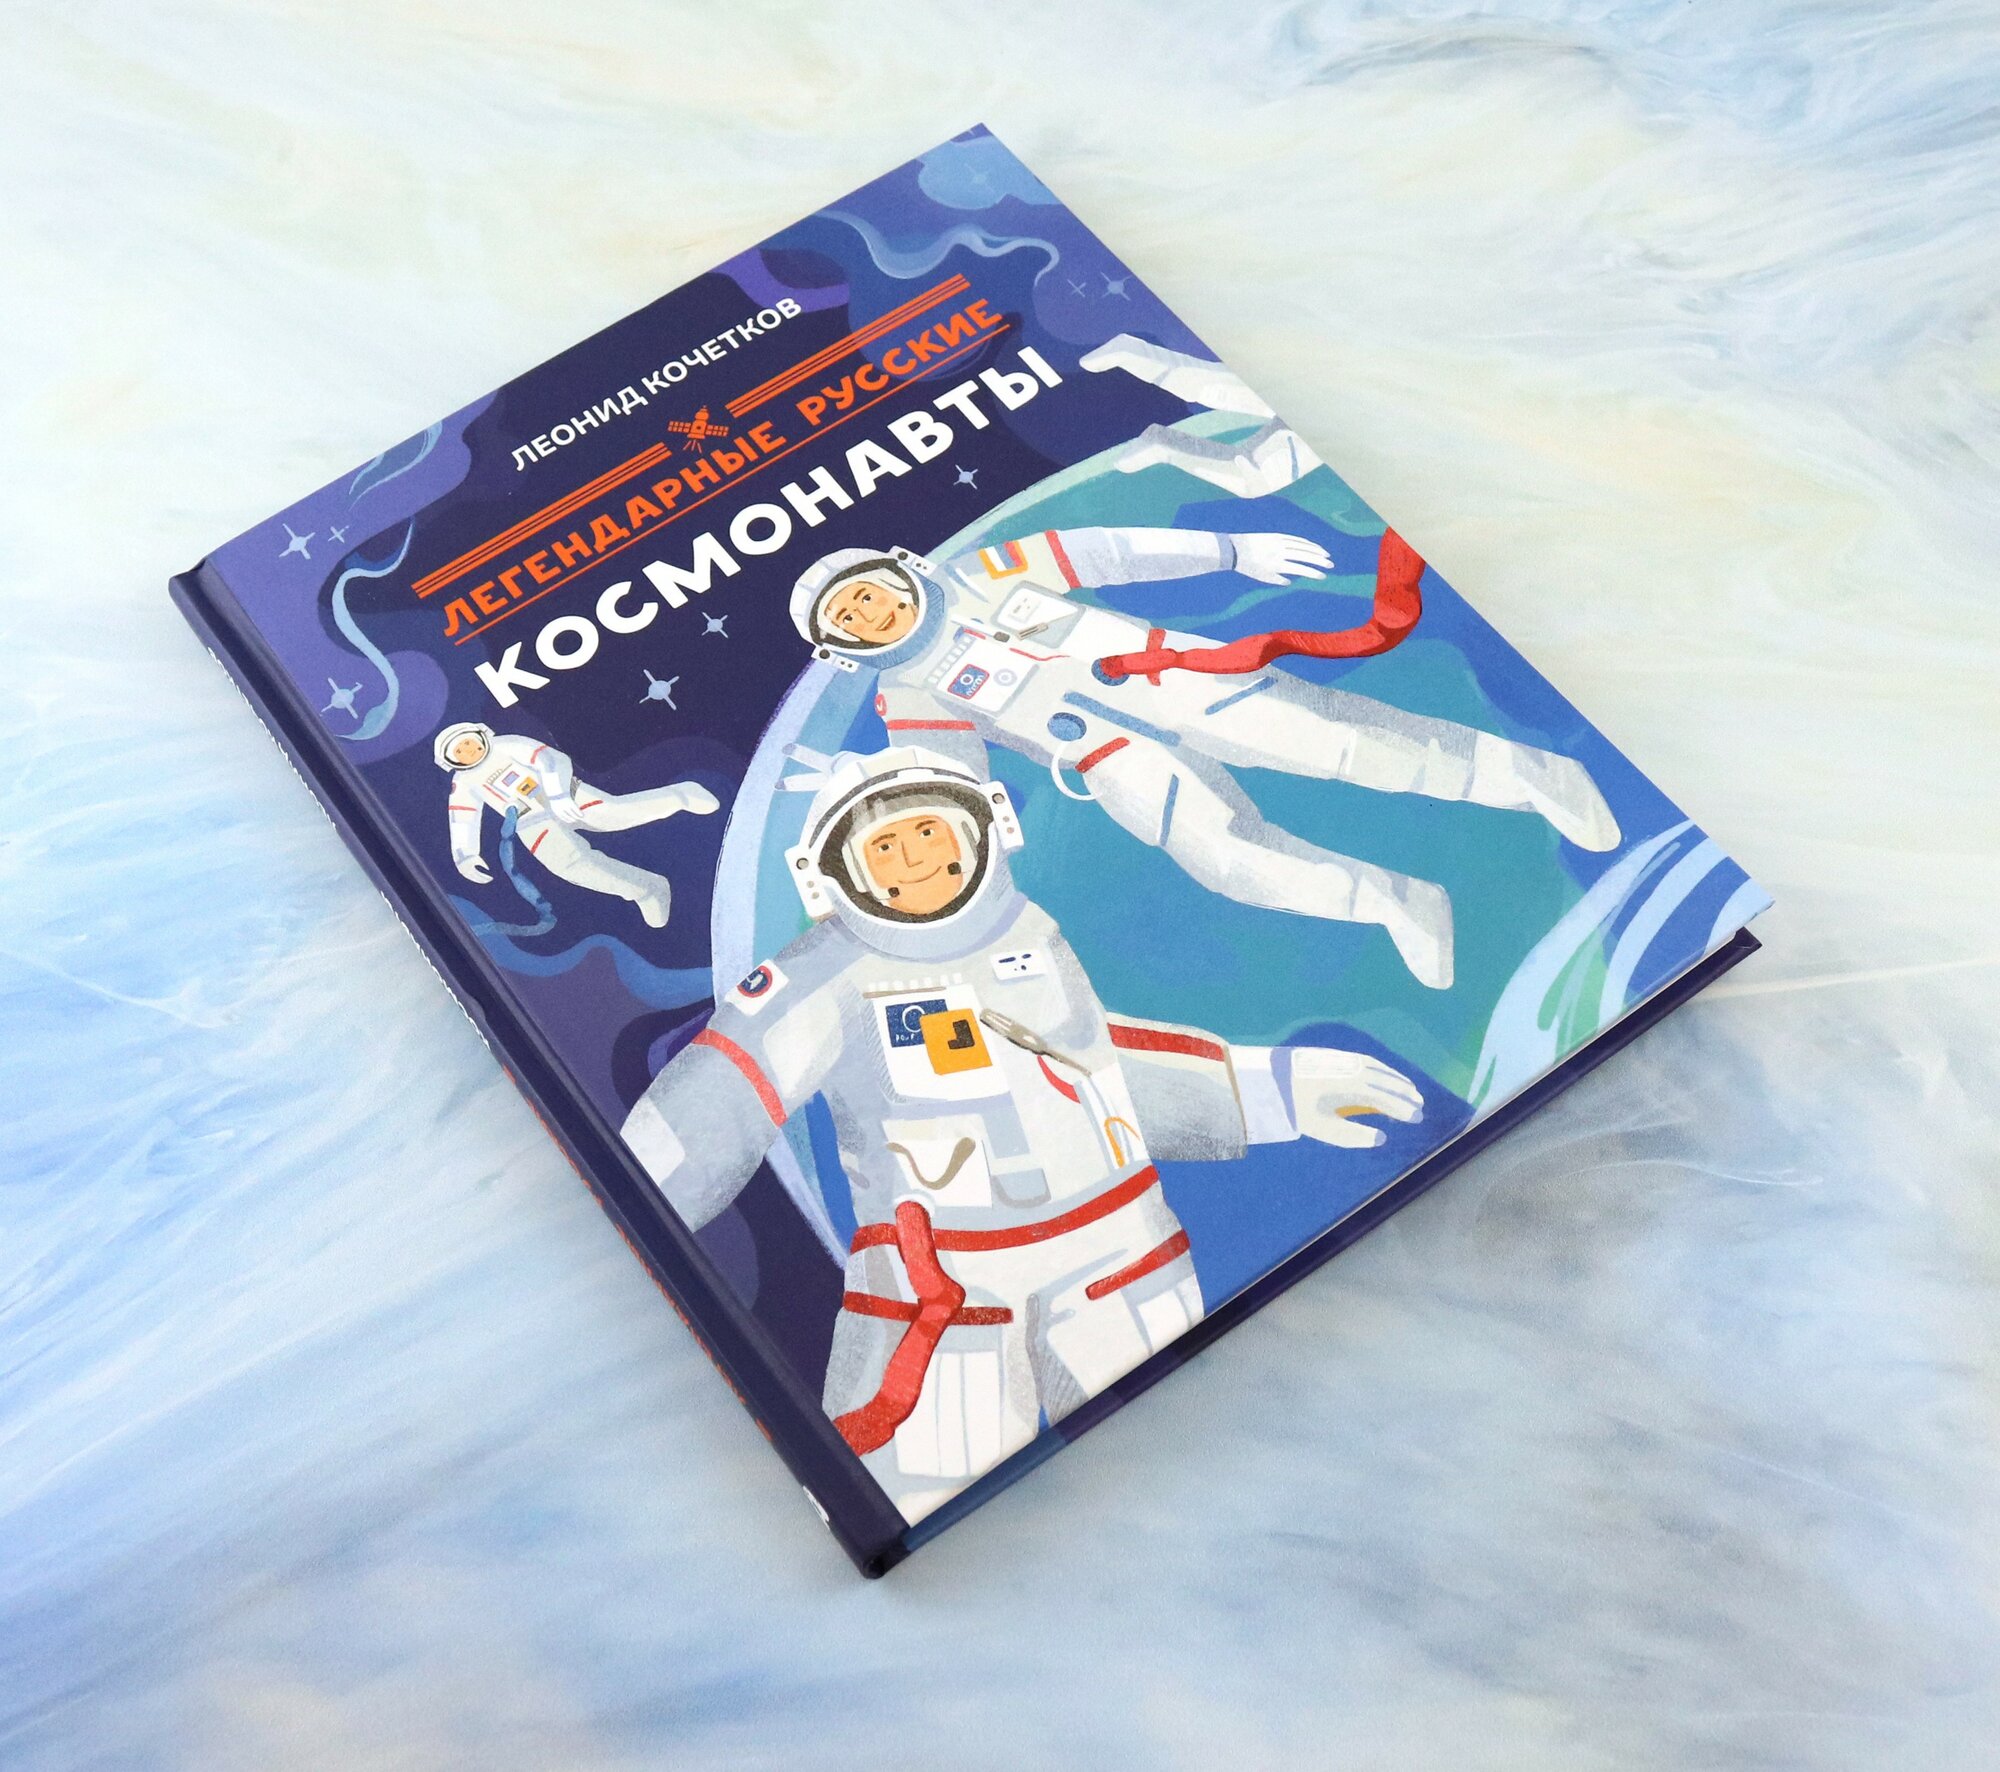 Легендарные русские космонавты - фото №9